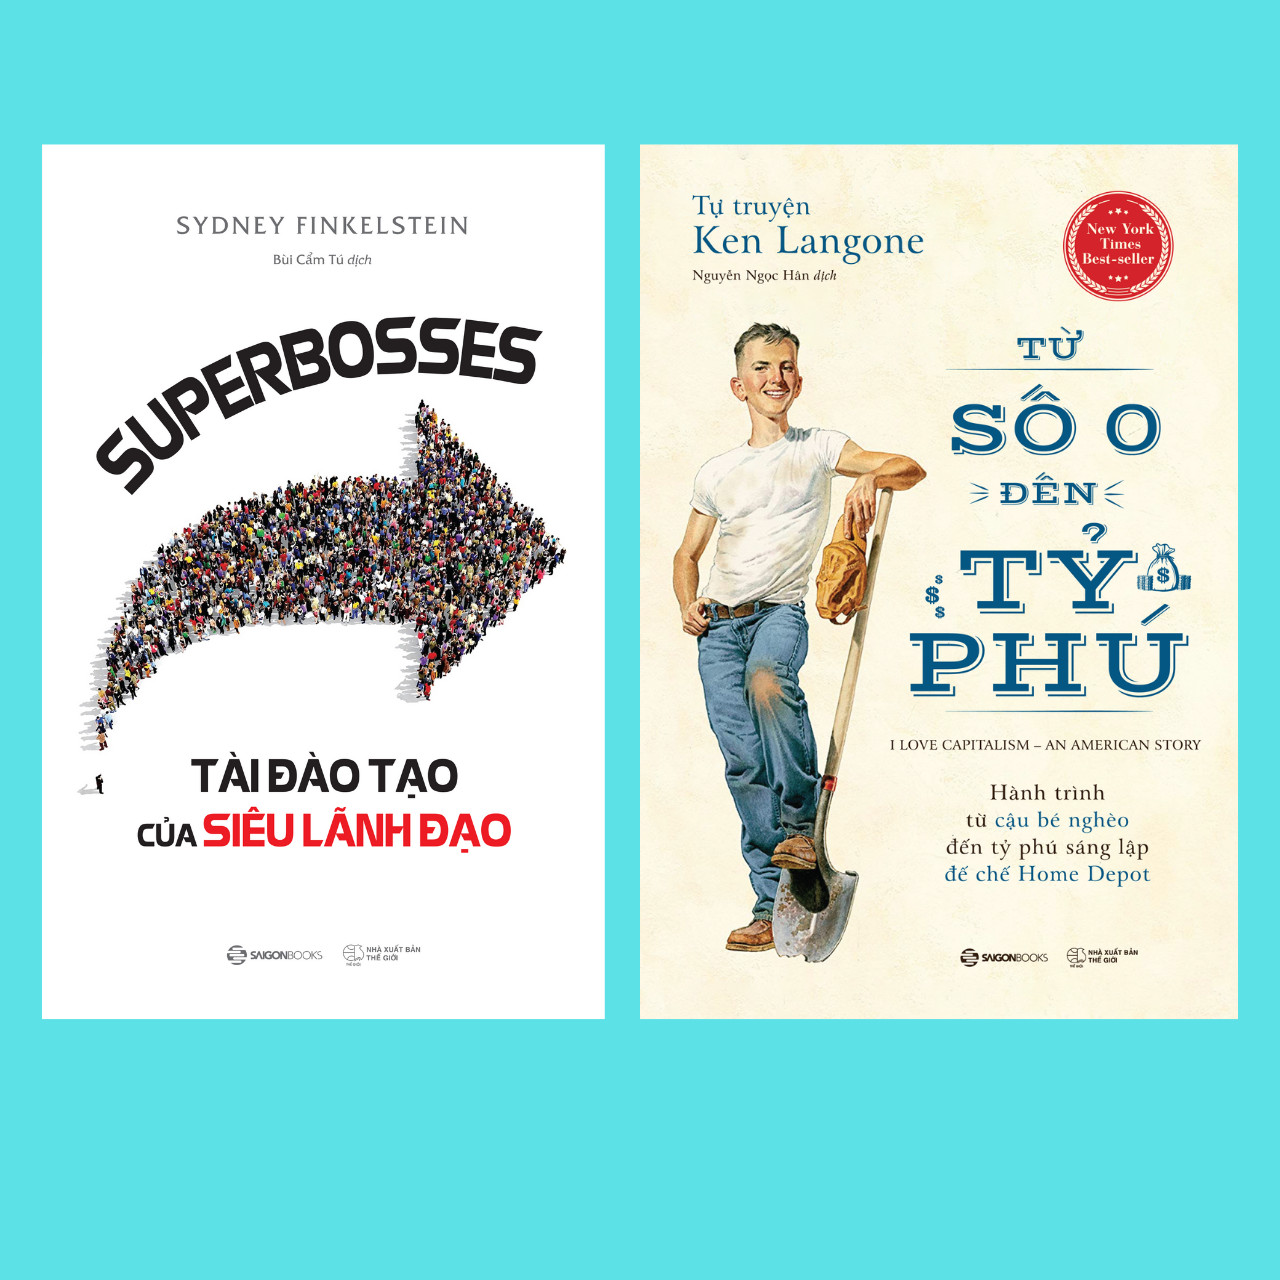 Combo SUPERBOSSES - Tài đào tạo của siêu lãnh đạo - Tự truyện Ken Langone: Từ số 0 đến tỷ phú